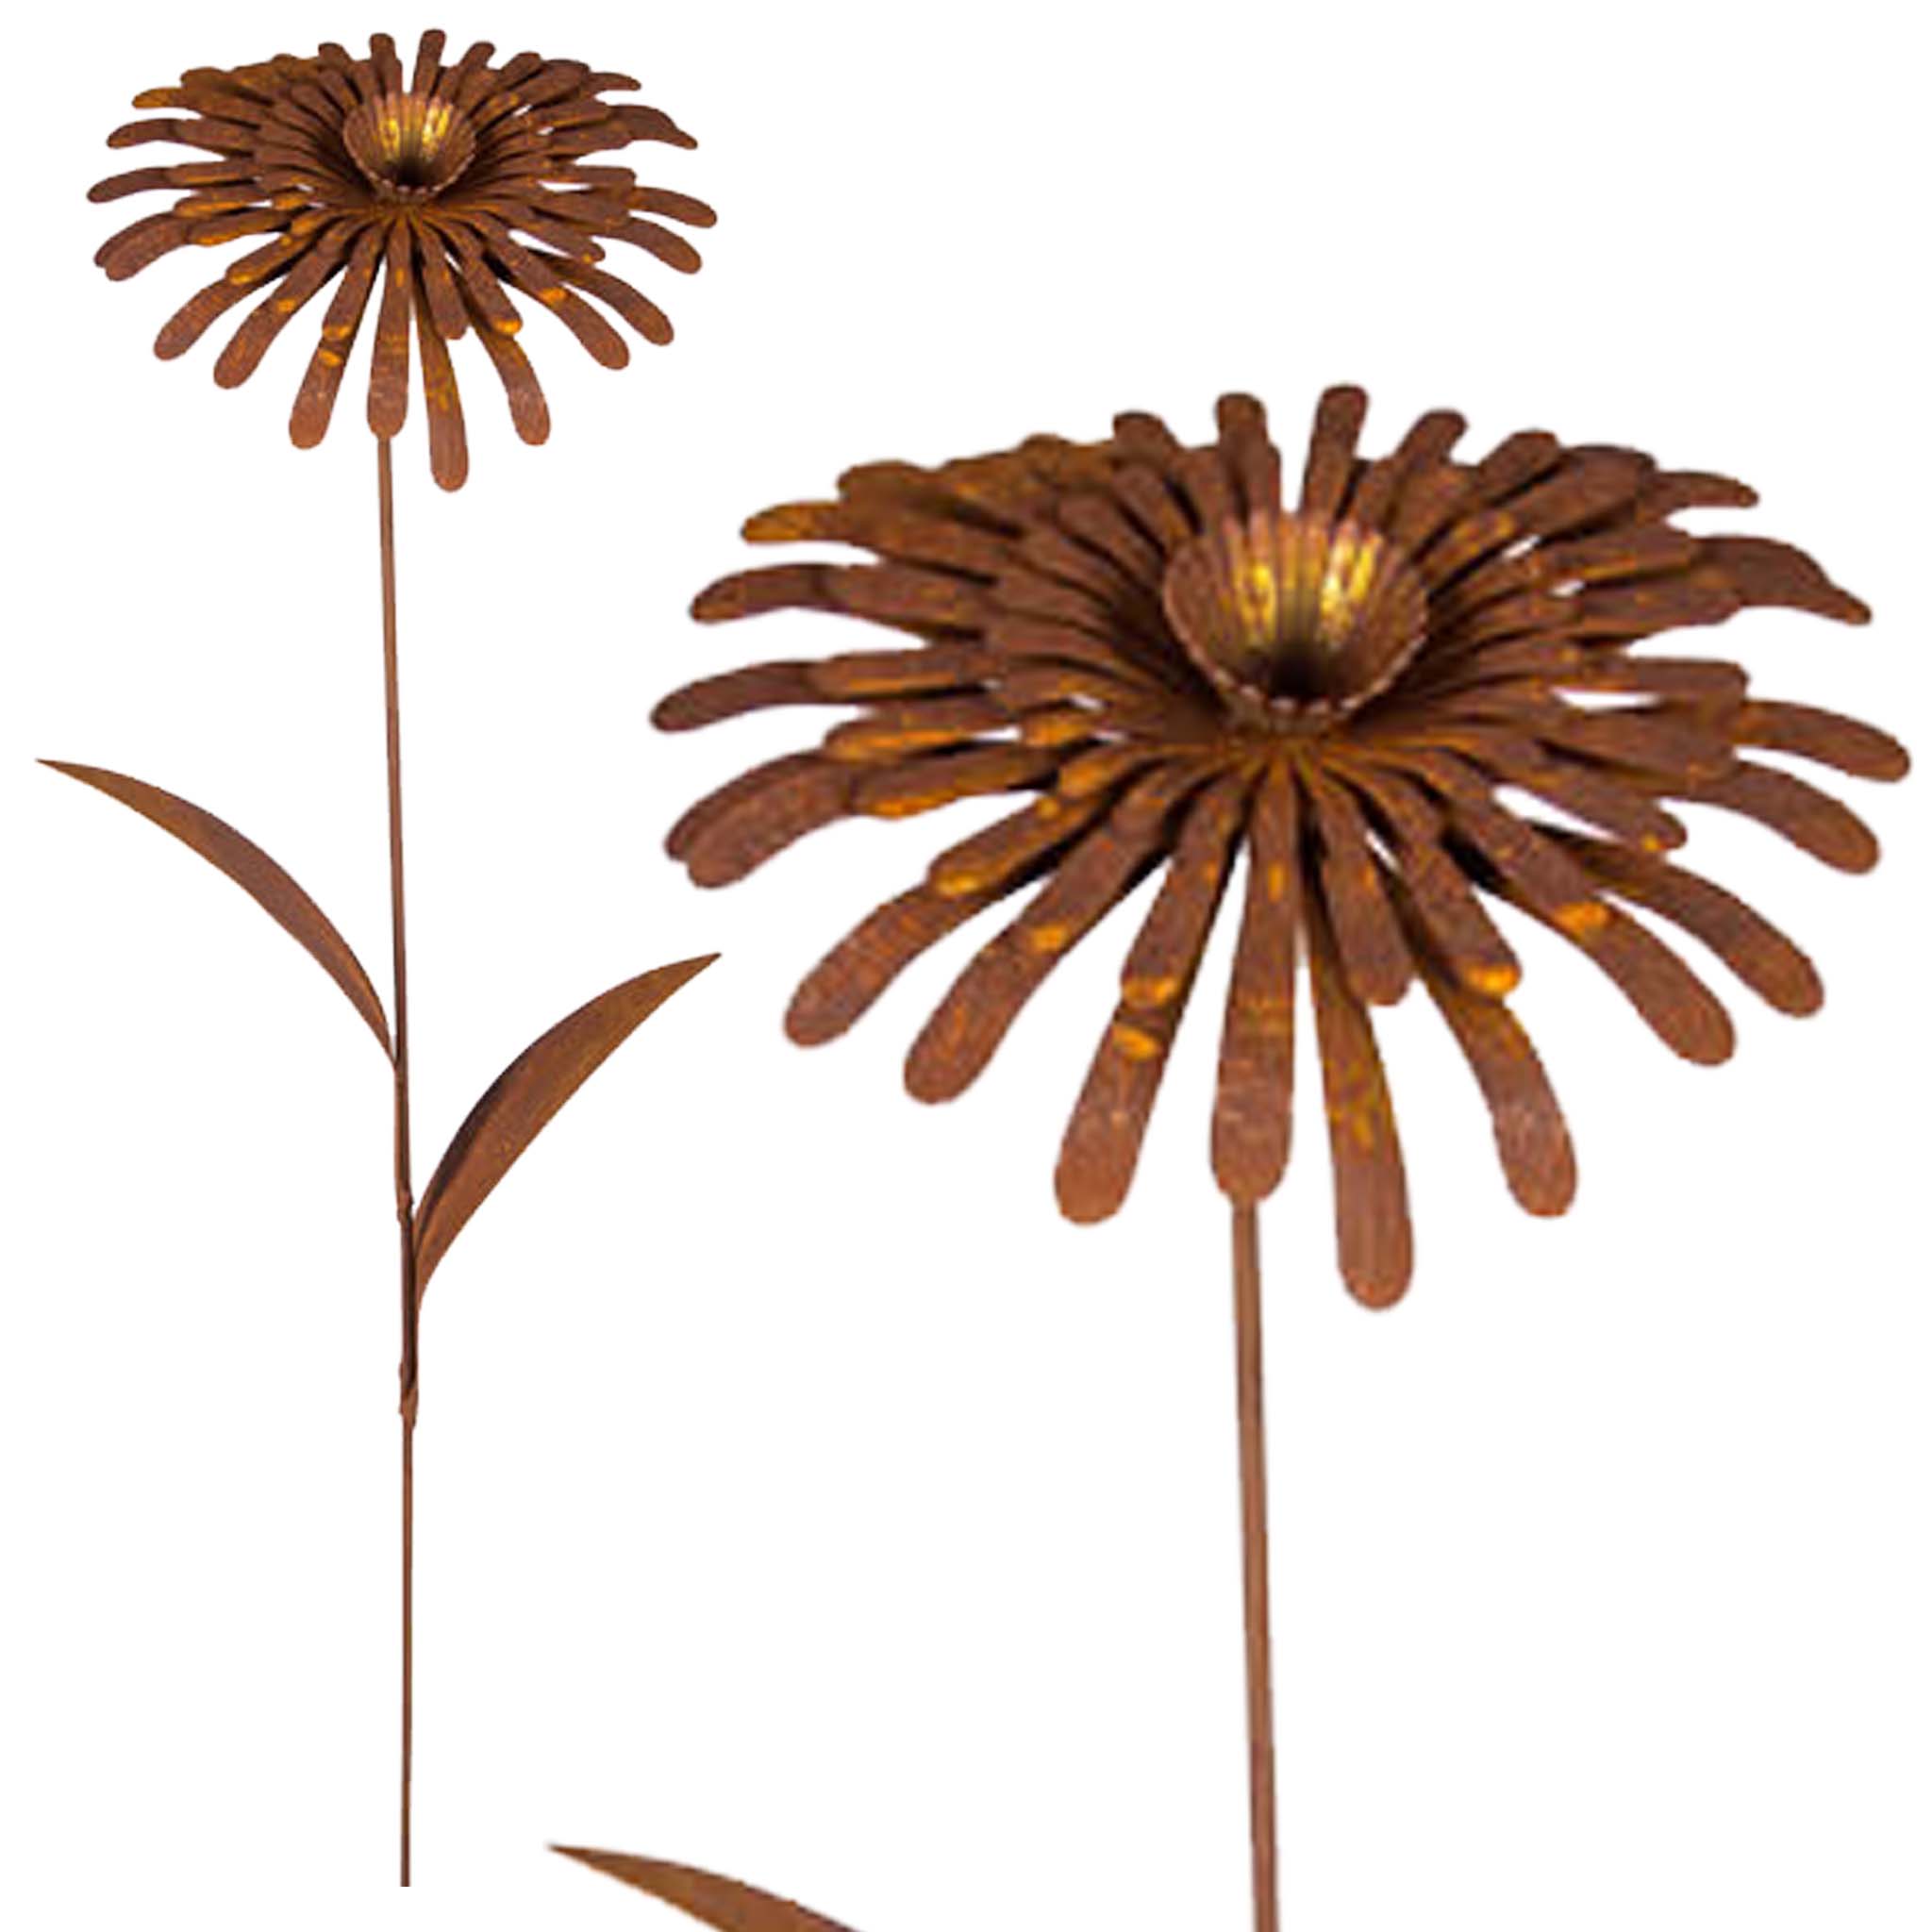 Eine wunderschöne Metall-Deko-Blume im Vintage-Look - perfekt für Garten, Balkon und Terrasse.